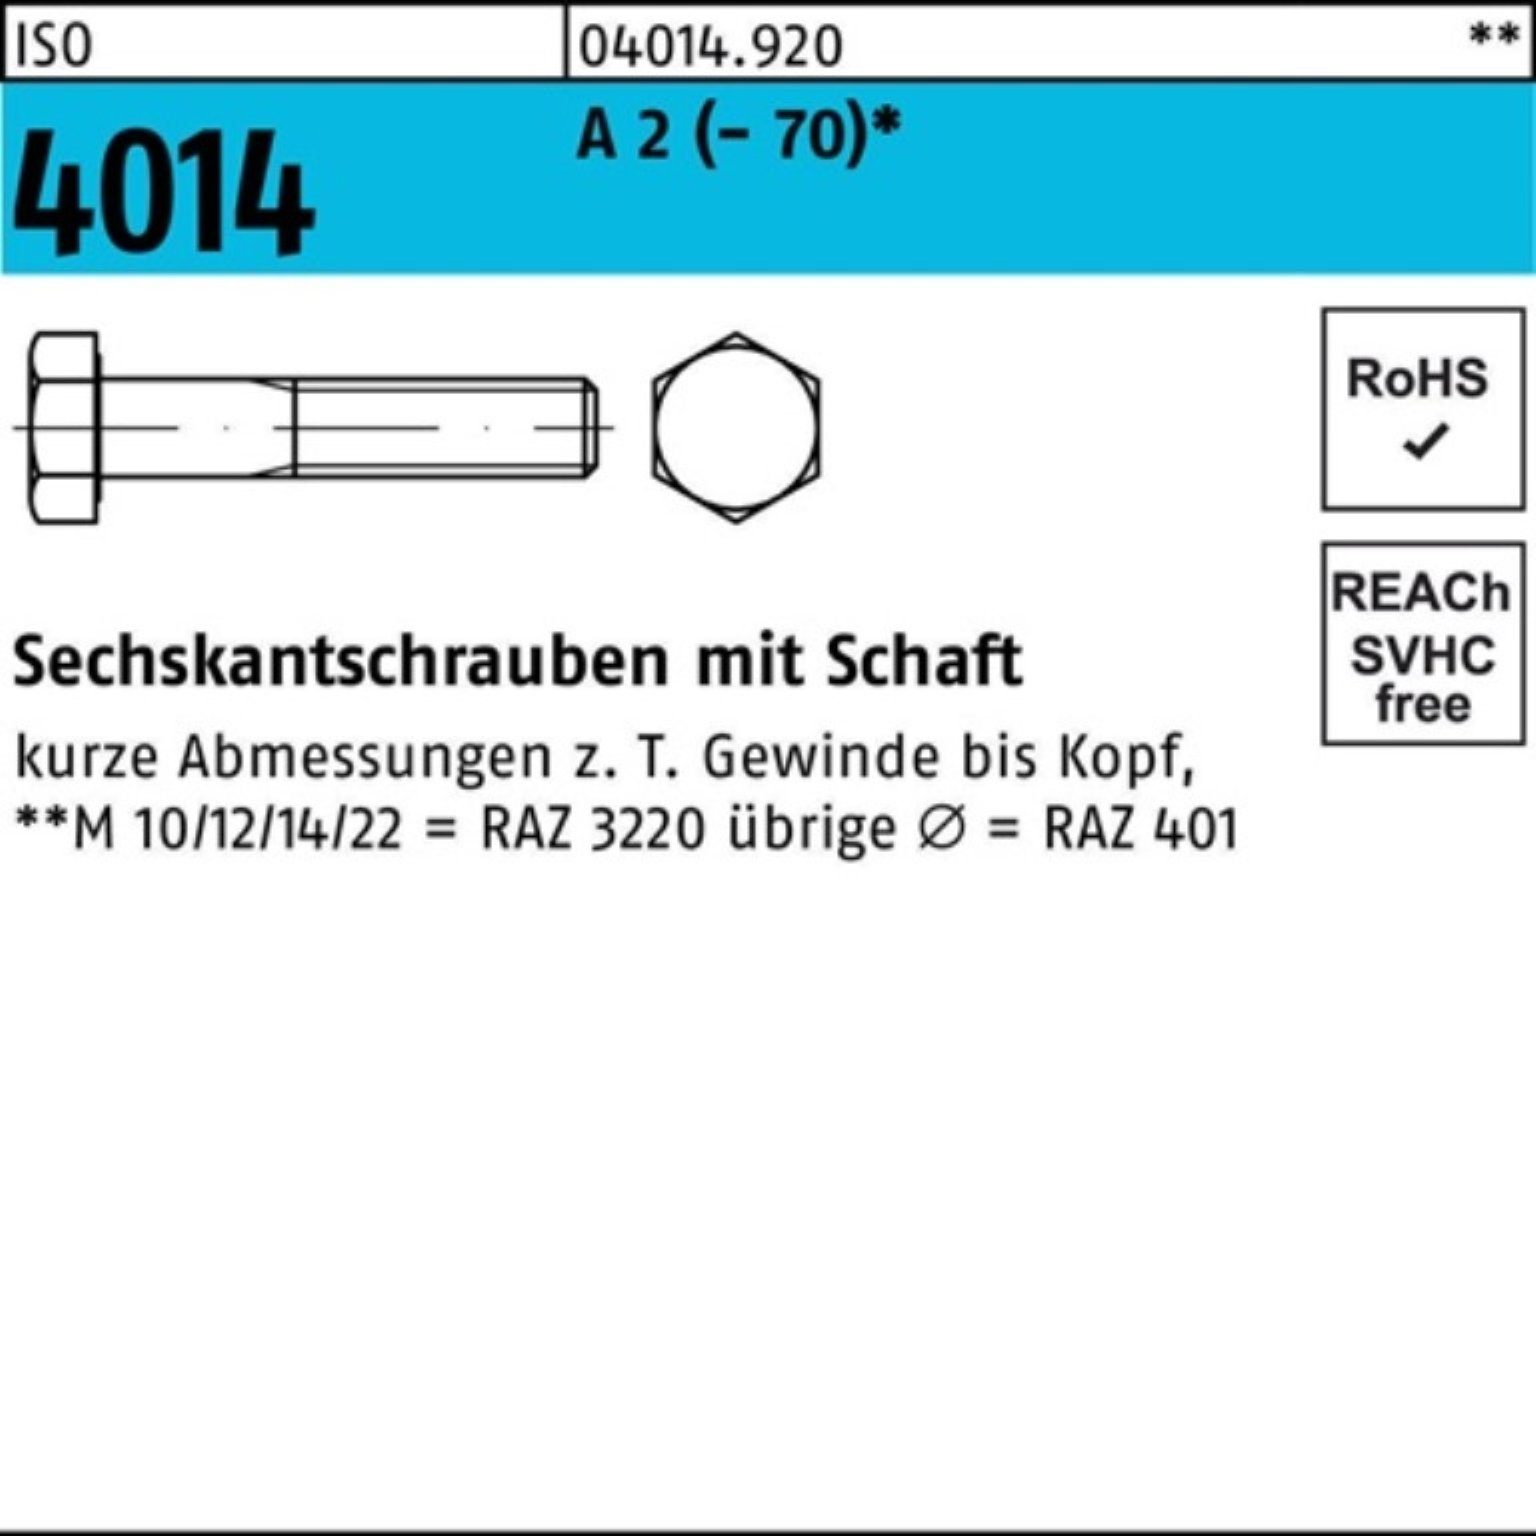 St Sechskantschraube Sechskantschraube Bufab 100 ISO Schaft Pack 4014 A M5x 2 100er (70) 60